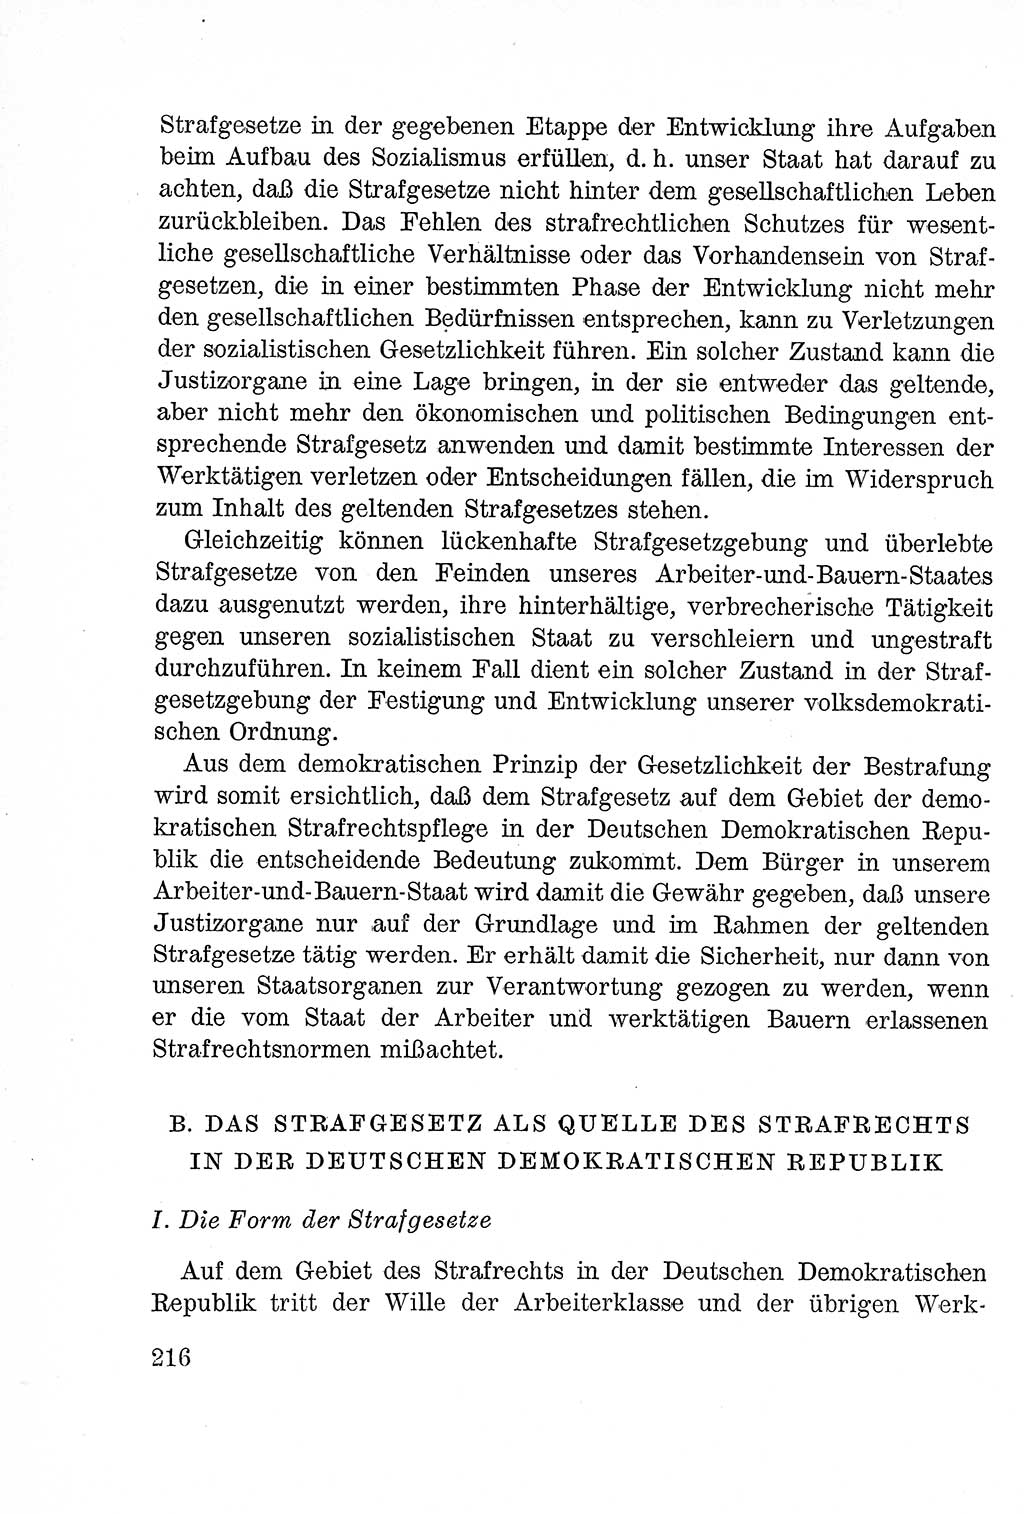 Lehrbuch des Strafrechts der Deutschen Demokratischen Republik (DDR), Allgemeiner Teil 1957, Seite 216 (Lb. Strafr. DDR AT 1957, S. 216)